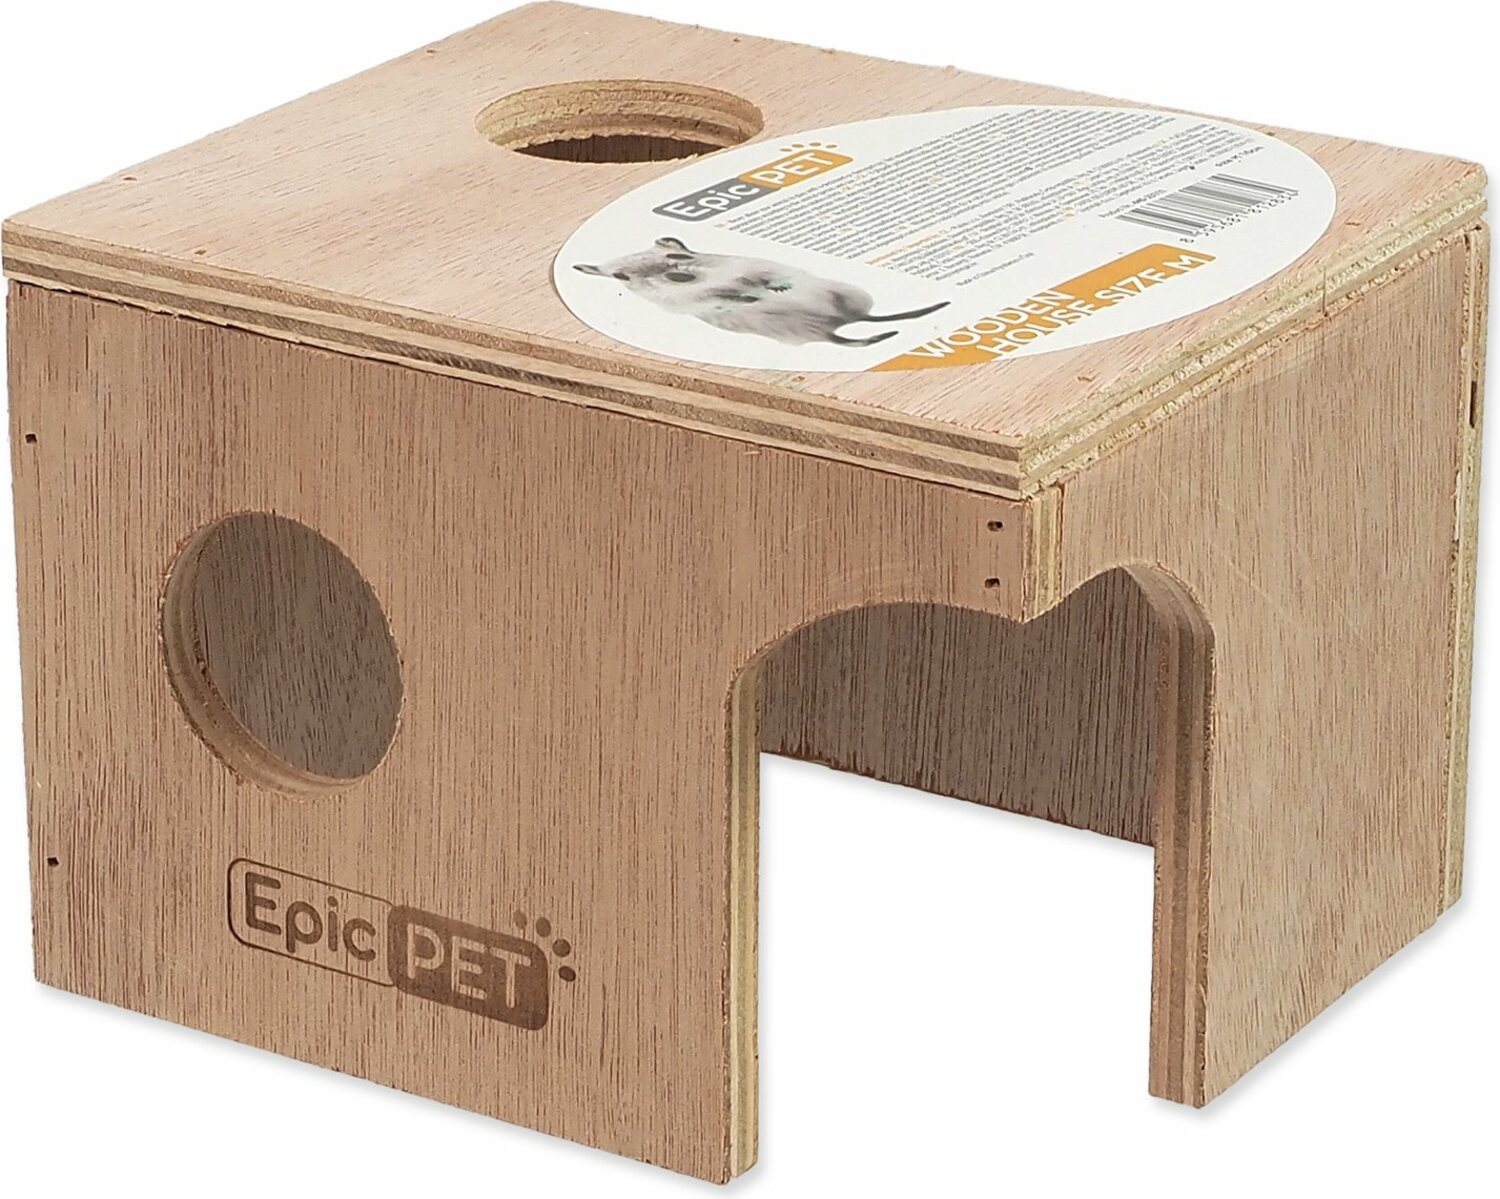 Domeček Epic Pet dřevěný M 16cm